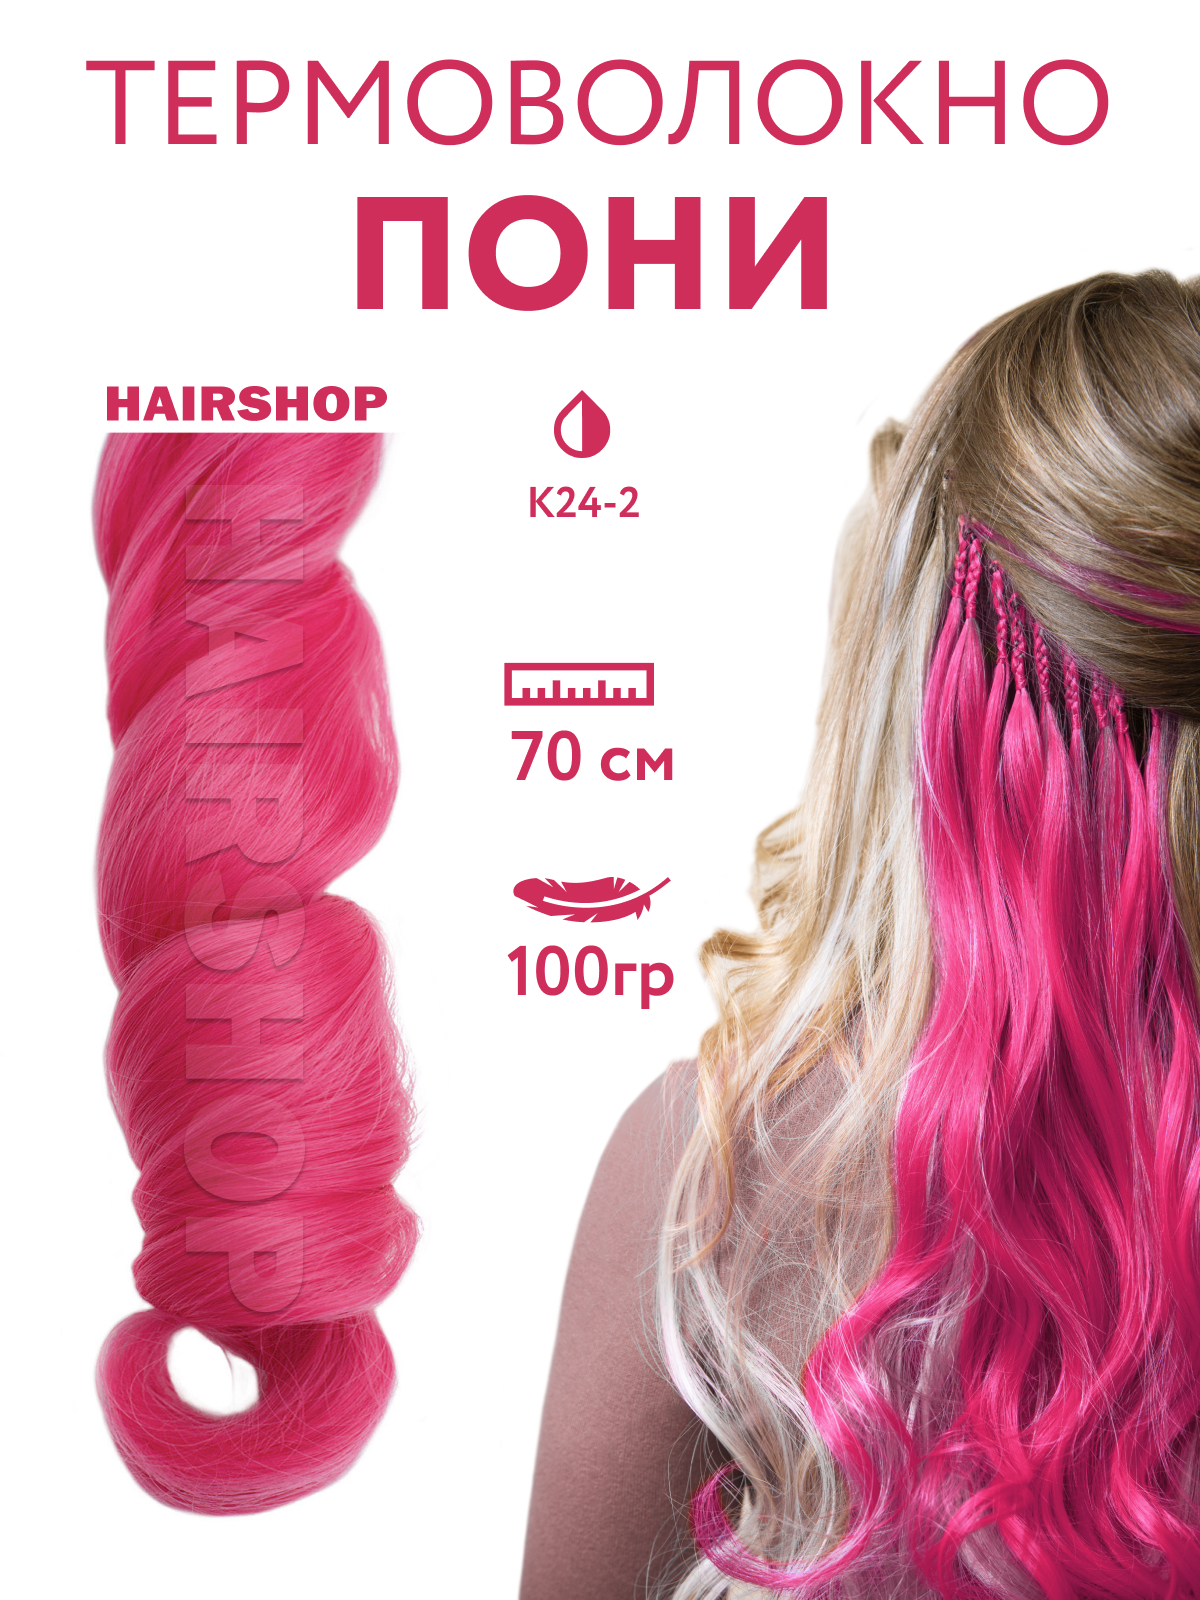 Канекалон HAIRSHOP Пони HairUp для точечного афронаращивания К24-2 Темно-розовый 1,4м халат унисекс махровый 100% хлопок темно розовый s m тас g kurusu 6 124